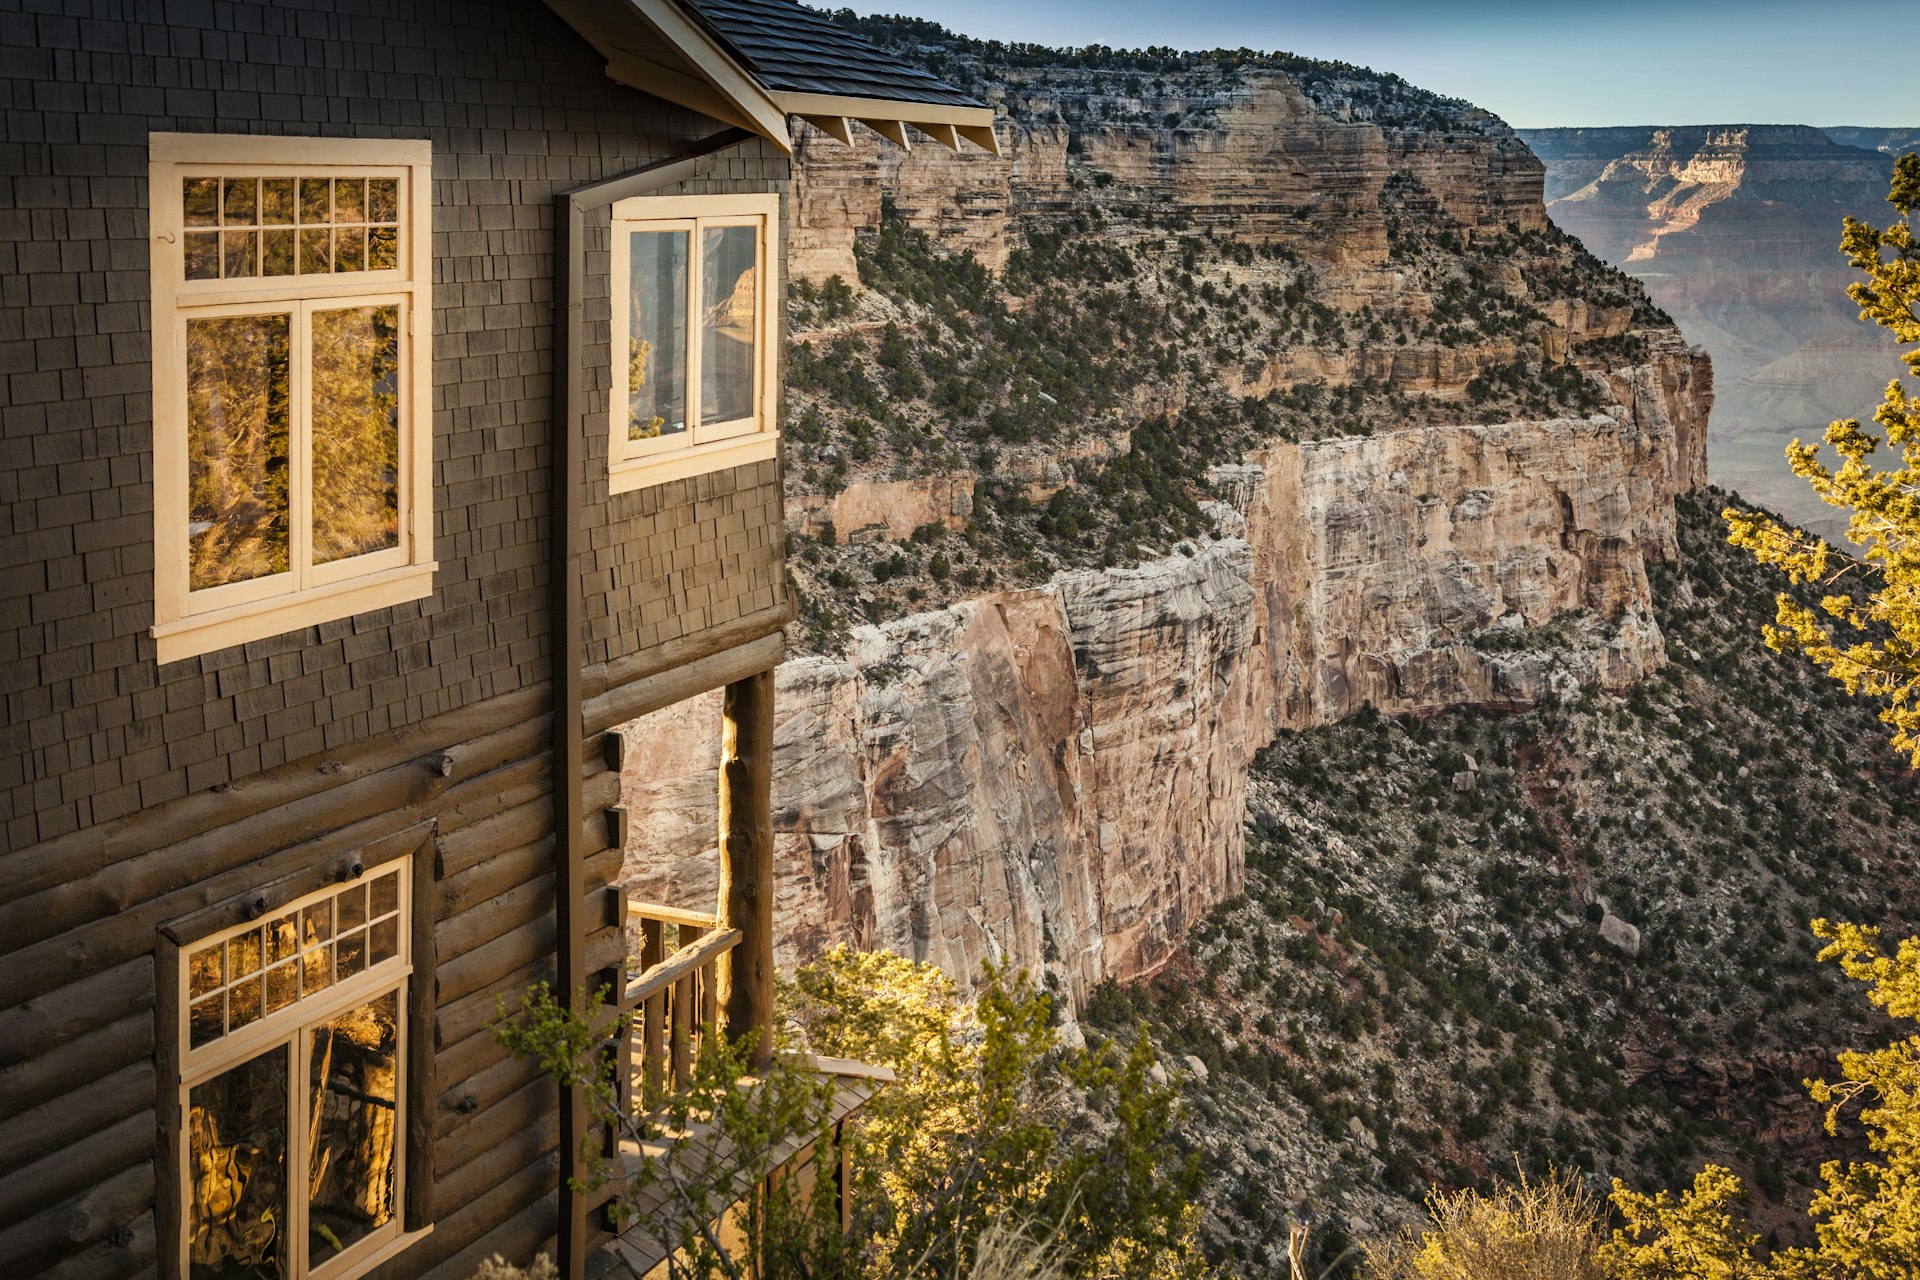 Historic Kolb Studio, Grand Canyon National Park, Arizona, USA